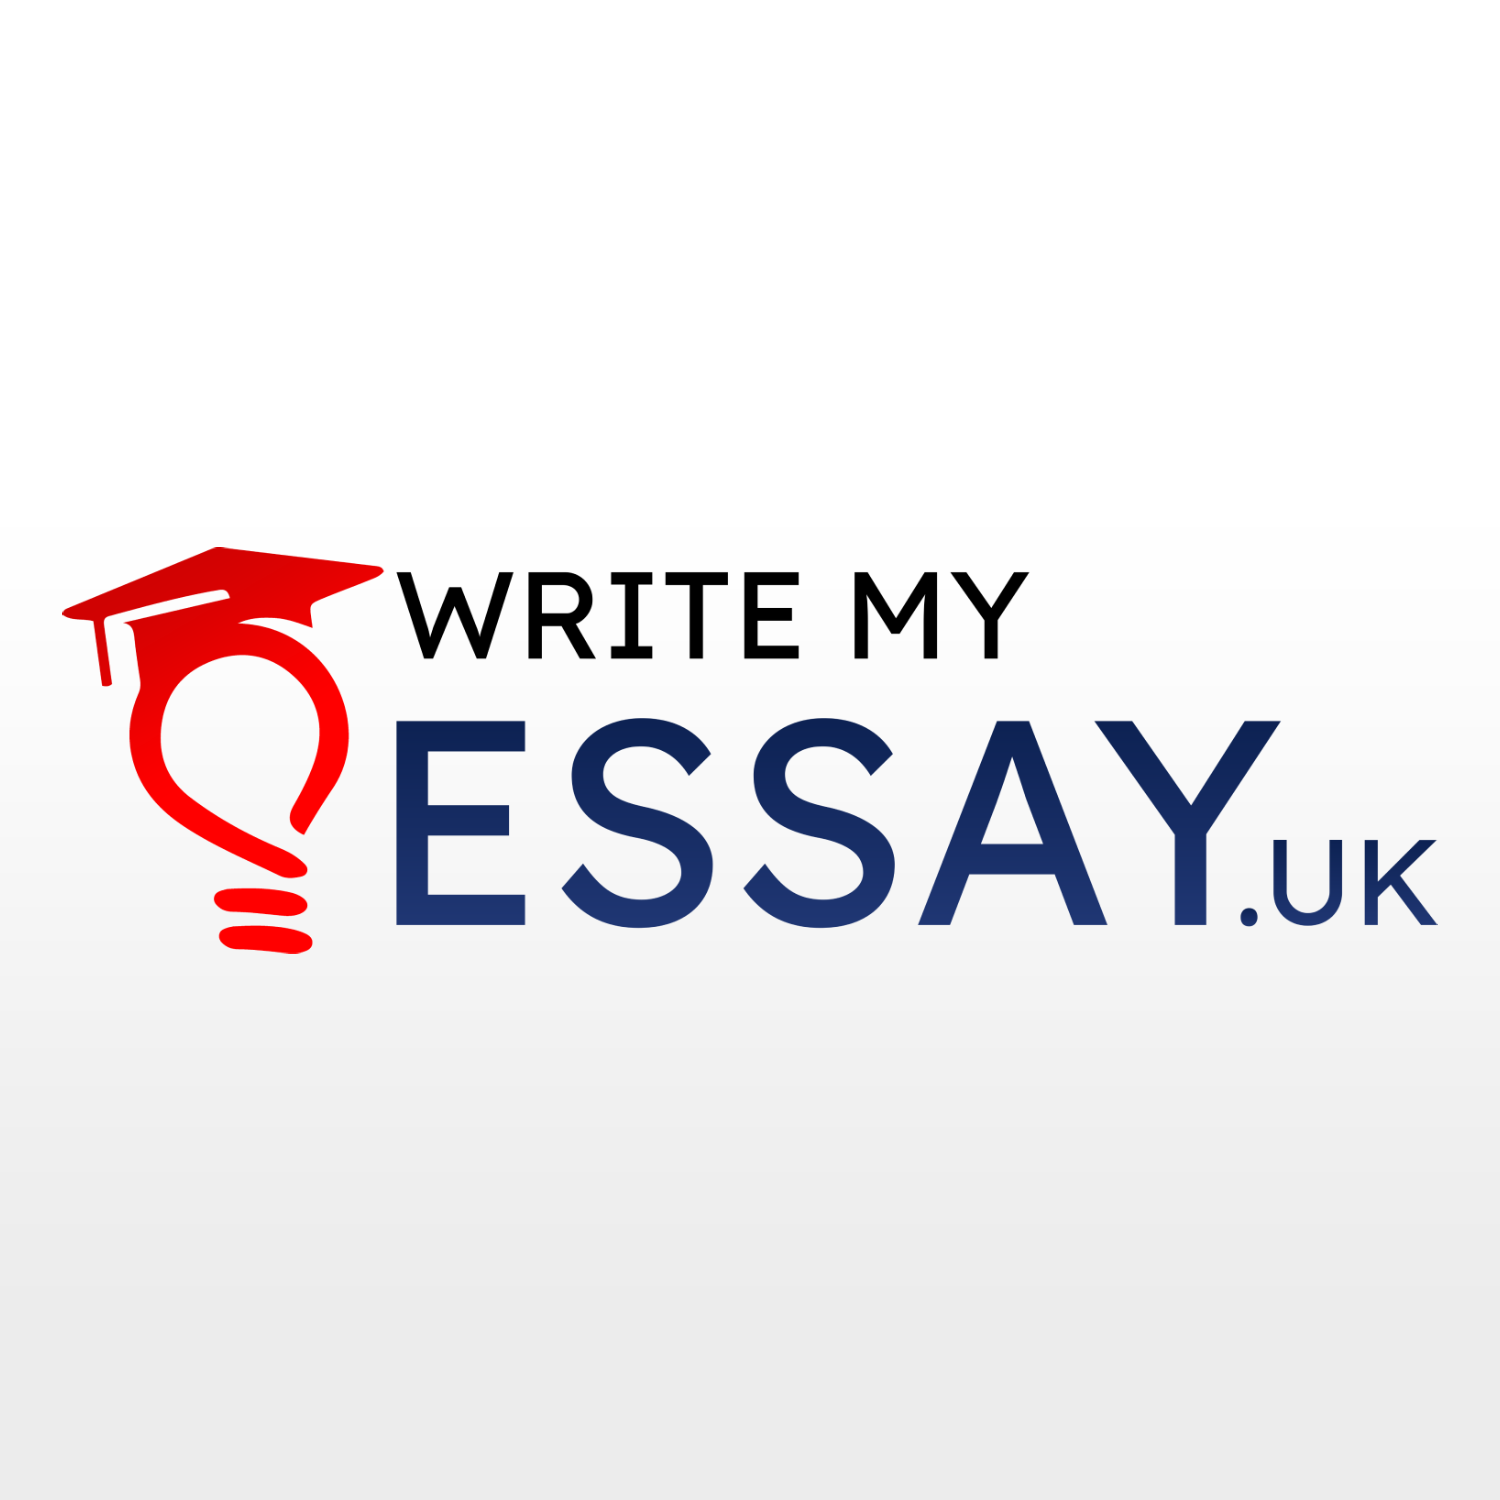 Company logo of WriteMyEssay